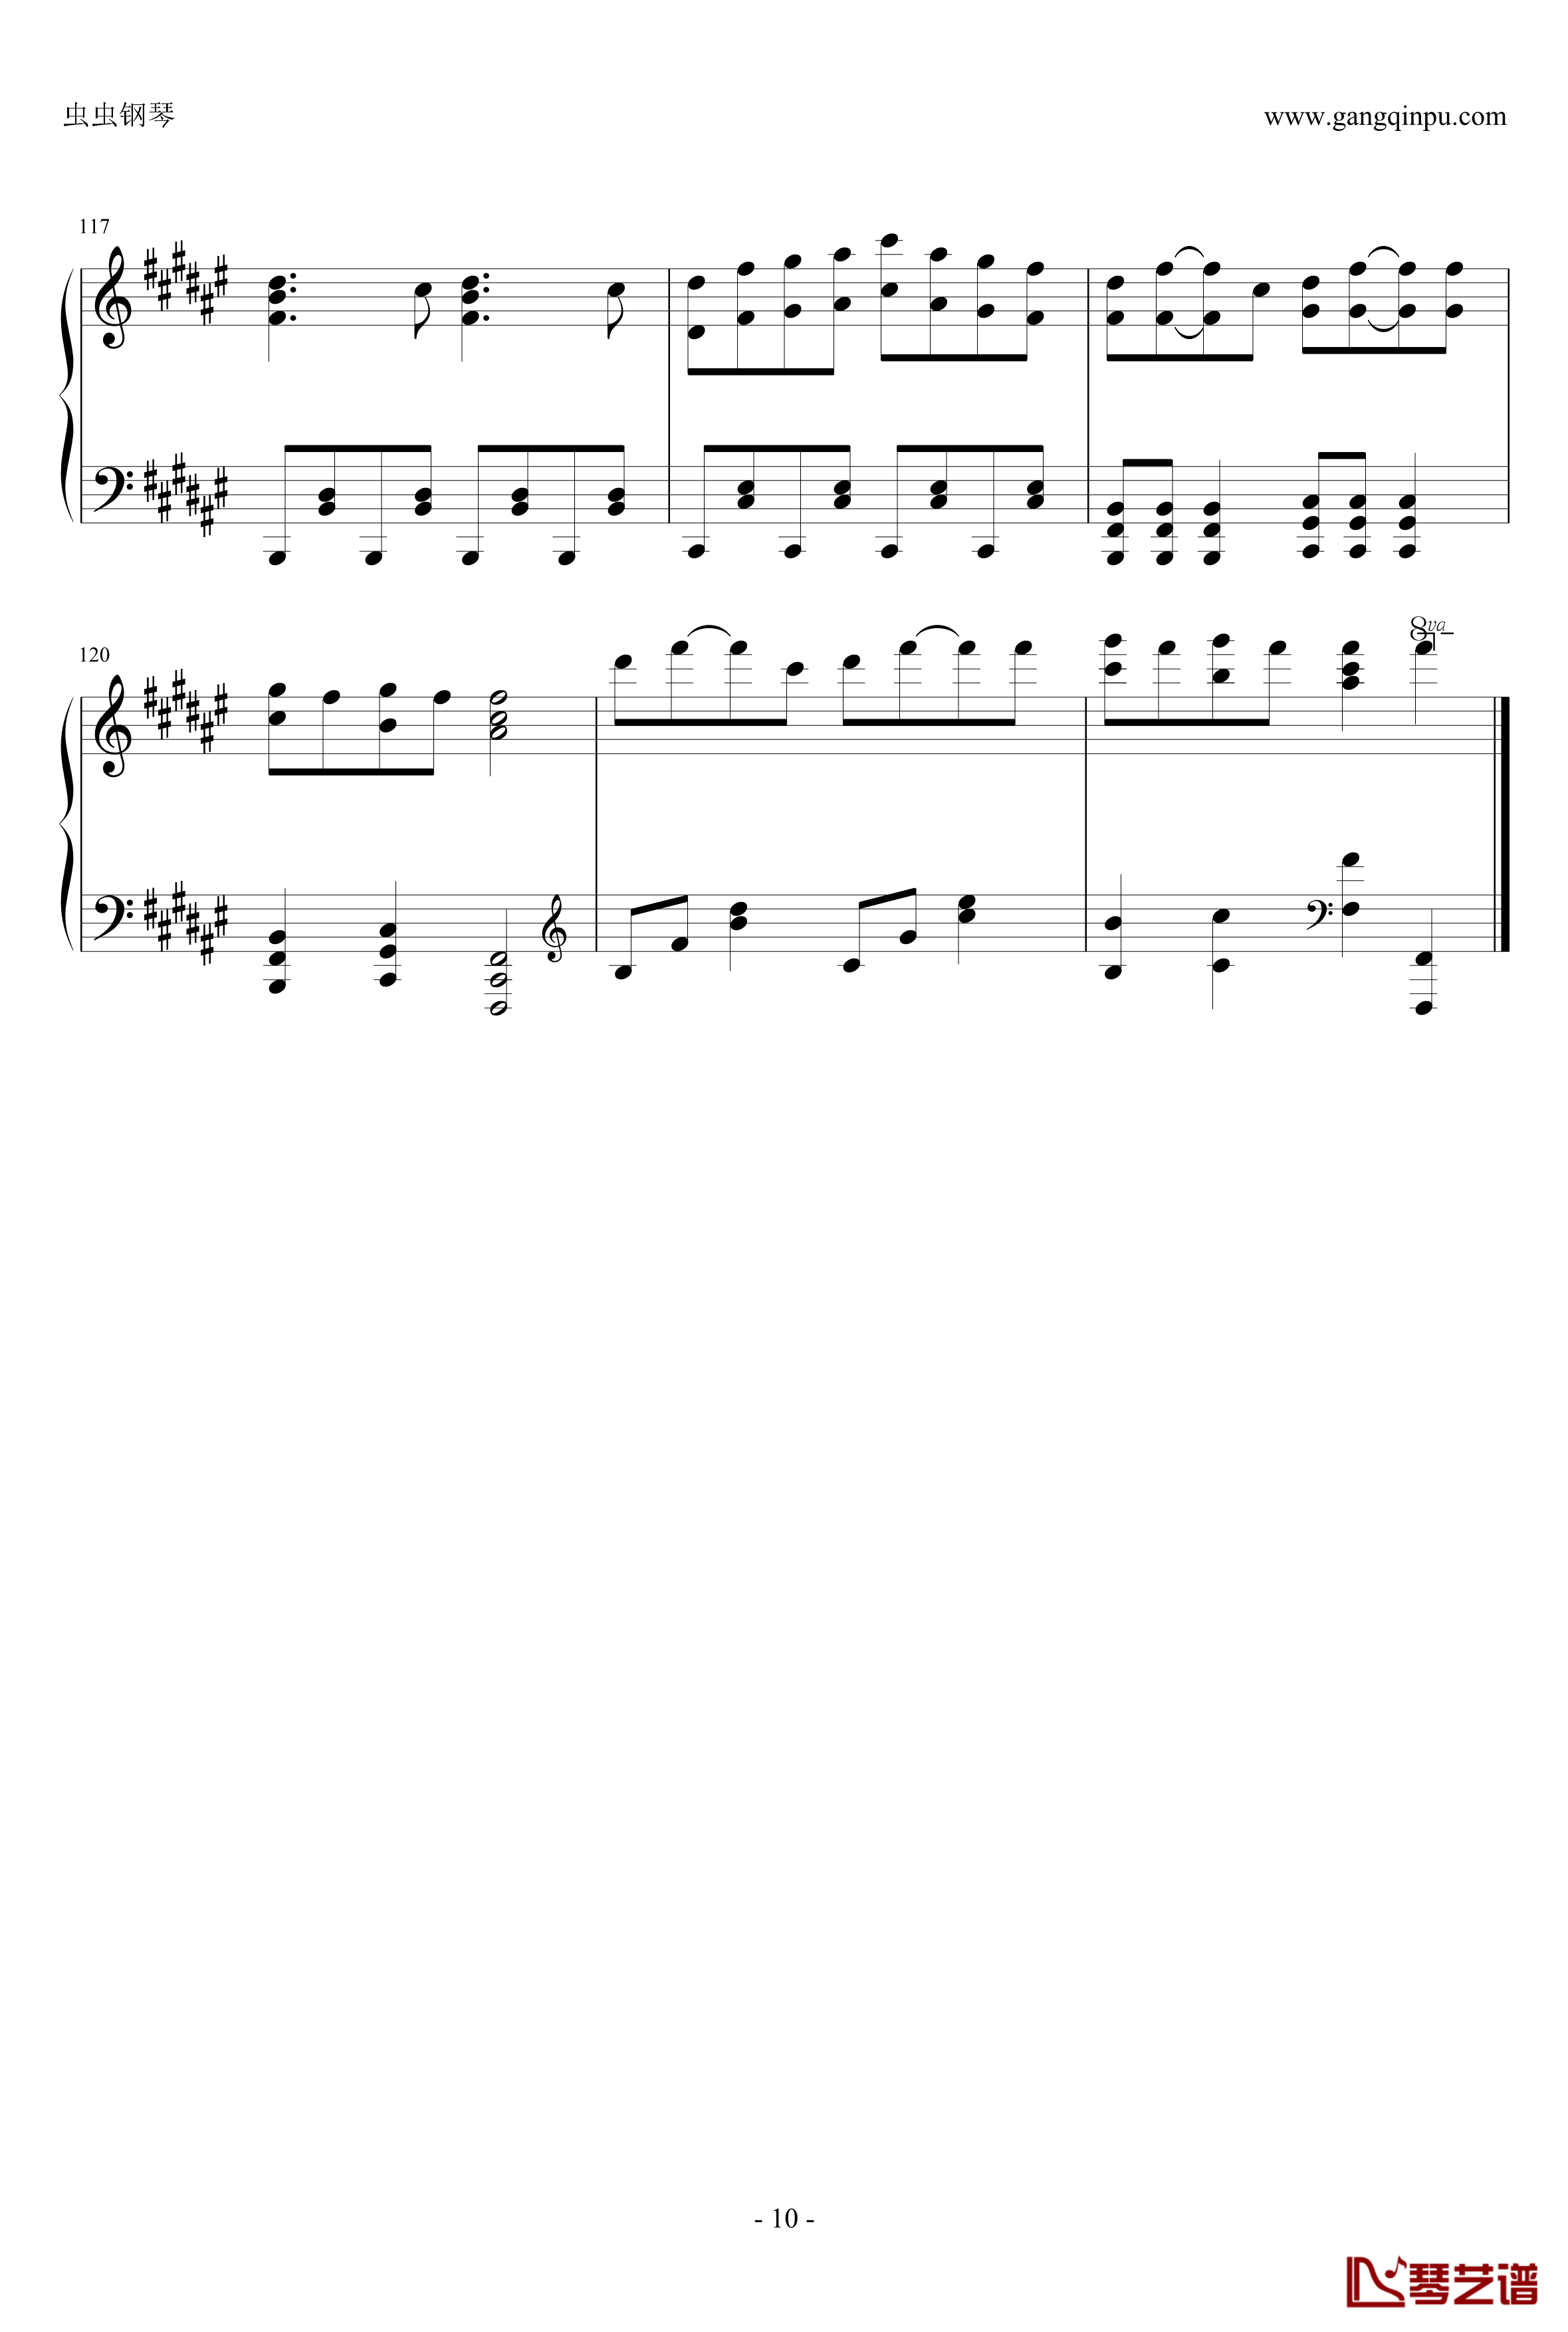 白金迪斯科钢琴谱-伪物语10